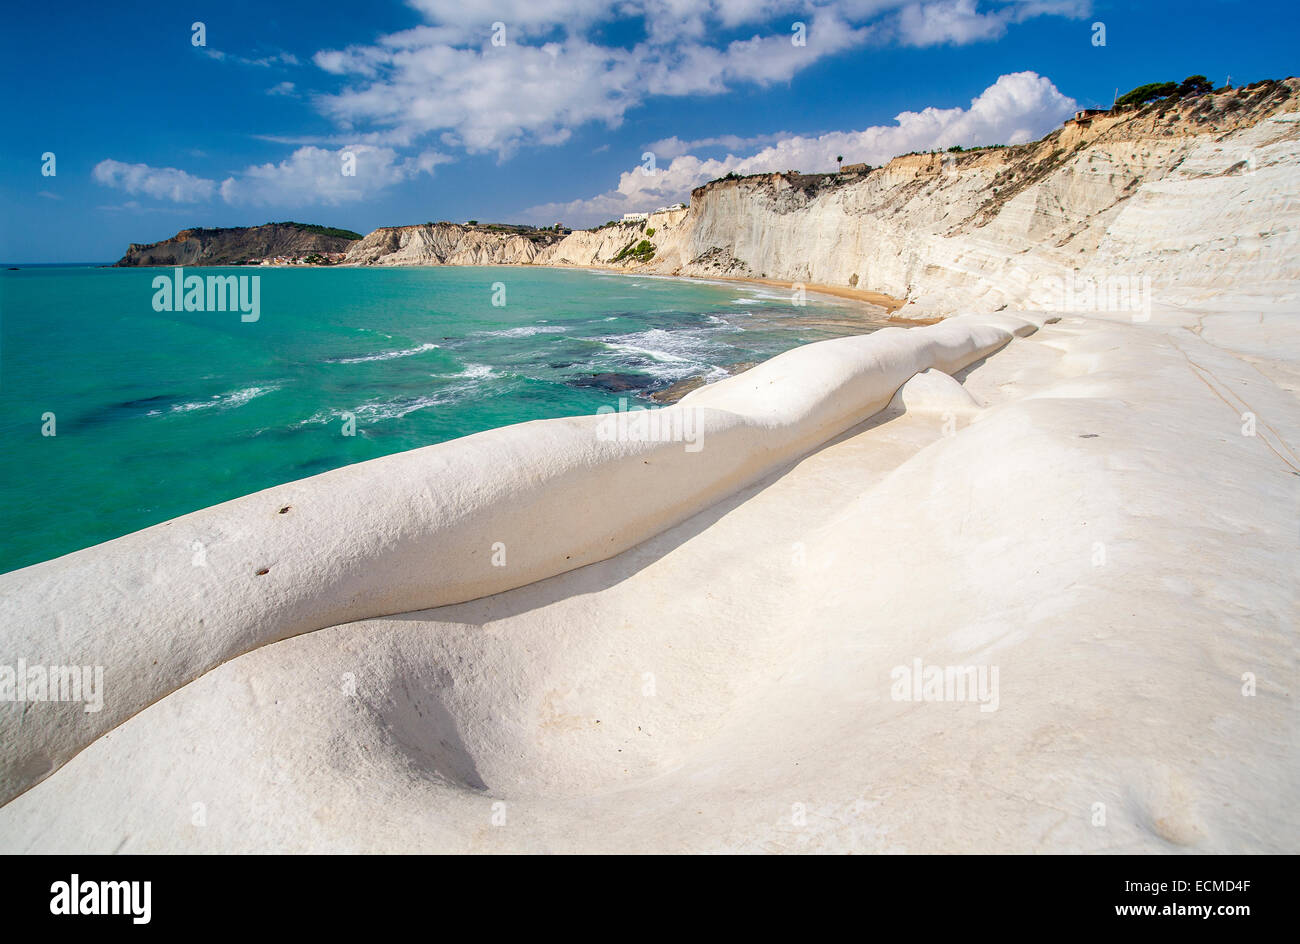 Scala dei Turchi - beach and white chalk cliffs in Sicily Stock Photo